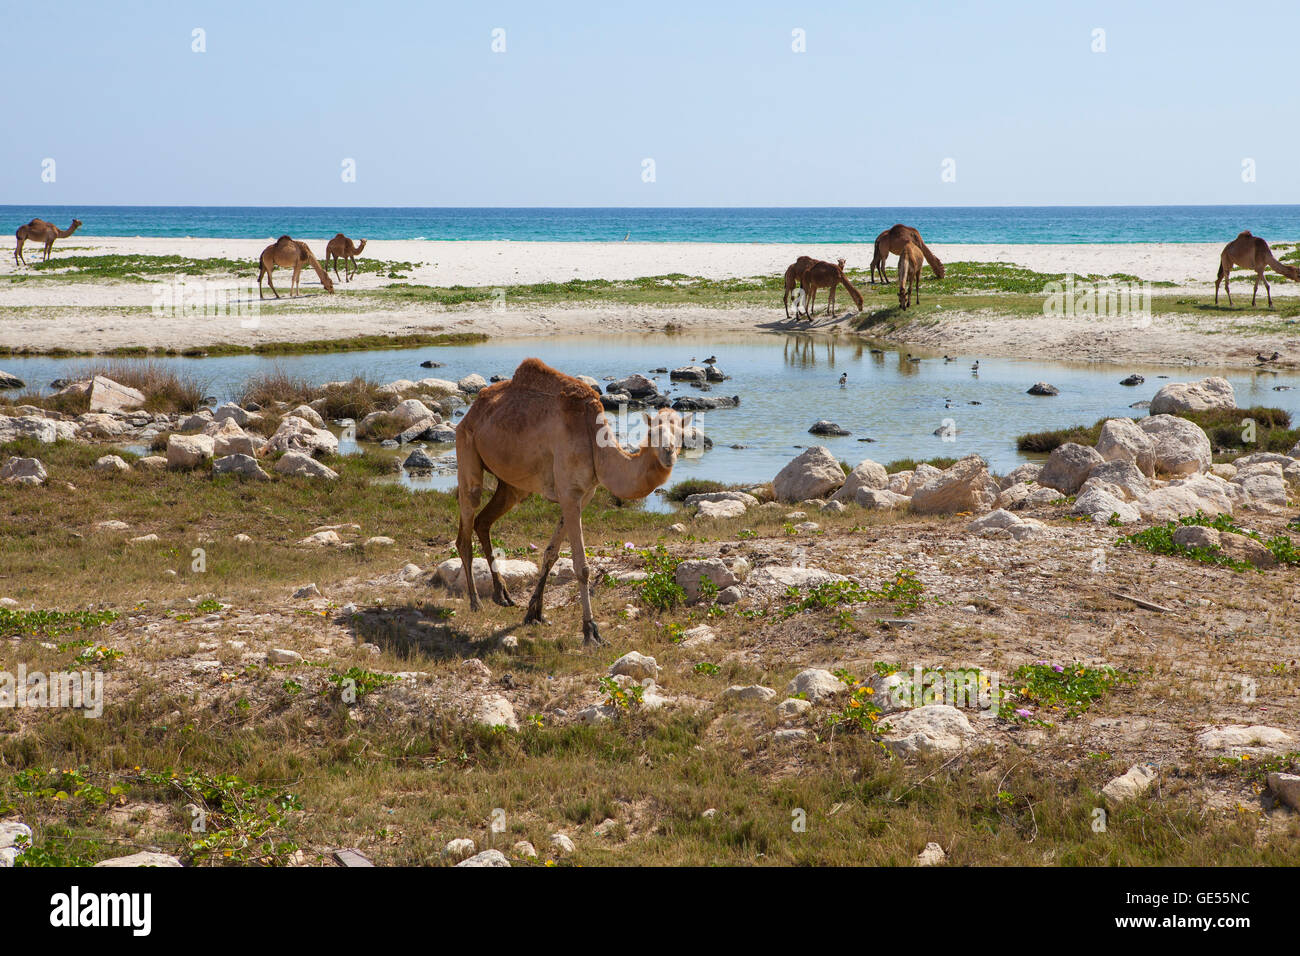 Image de chameaux sur une plage, dans la région de Dhofar, Oman. Banque D'Images